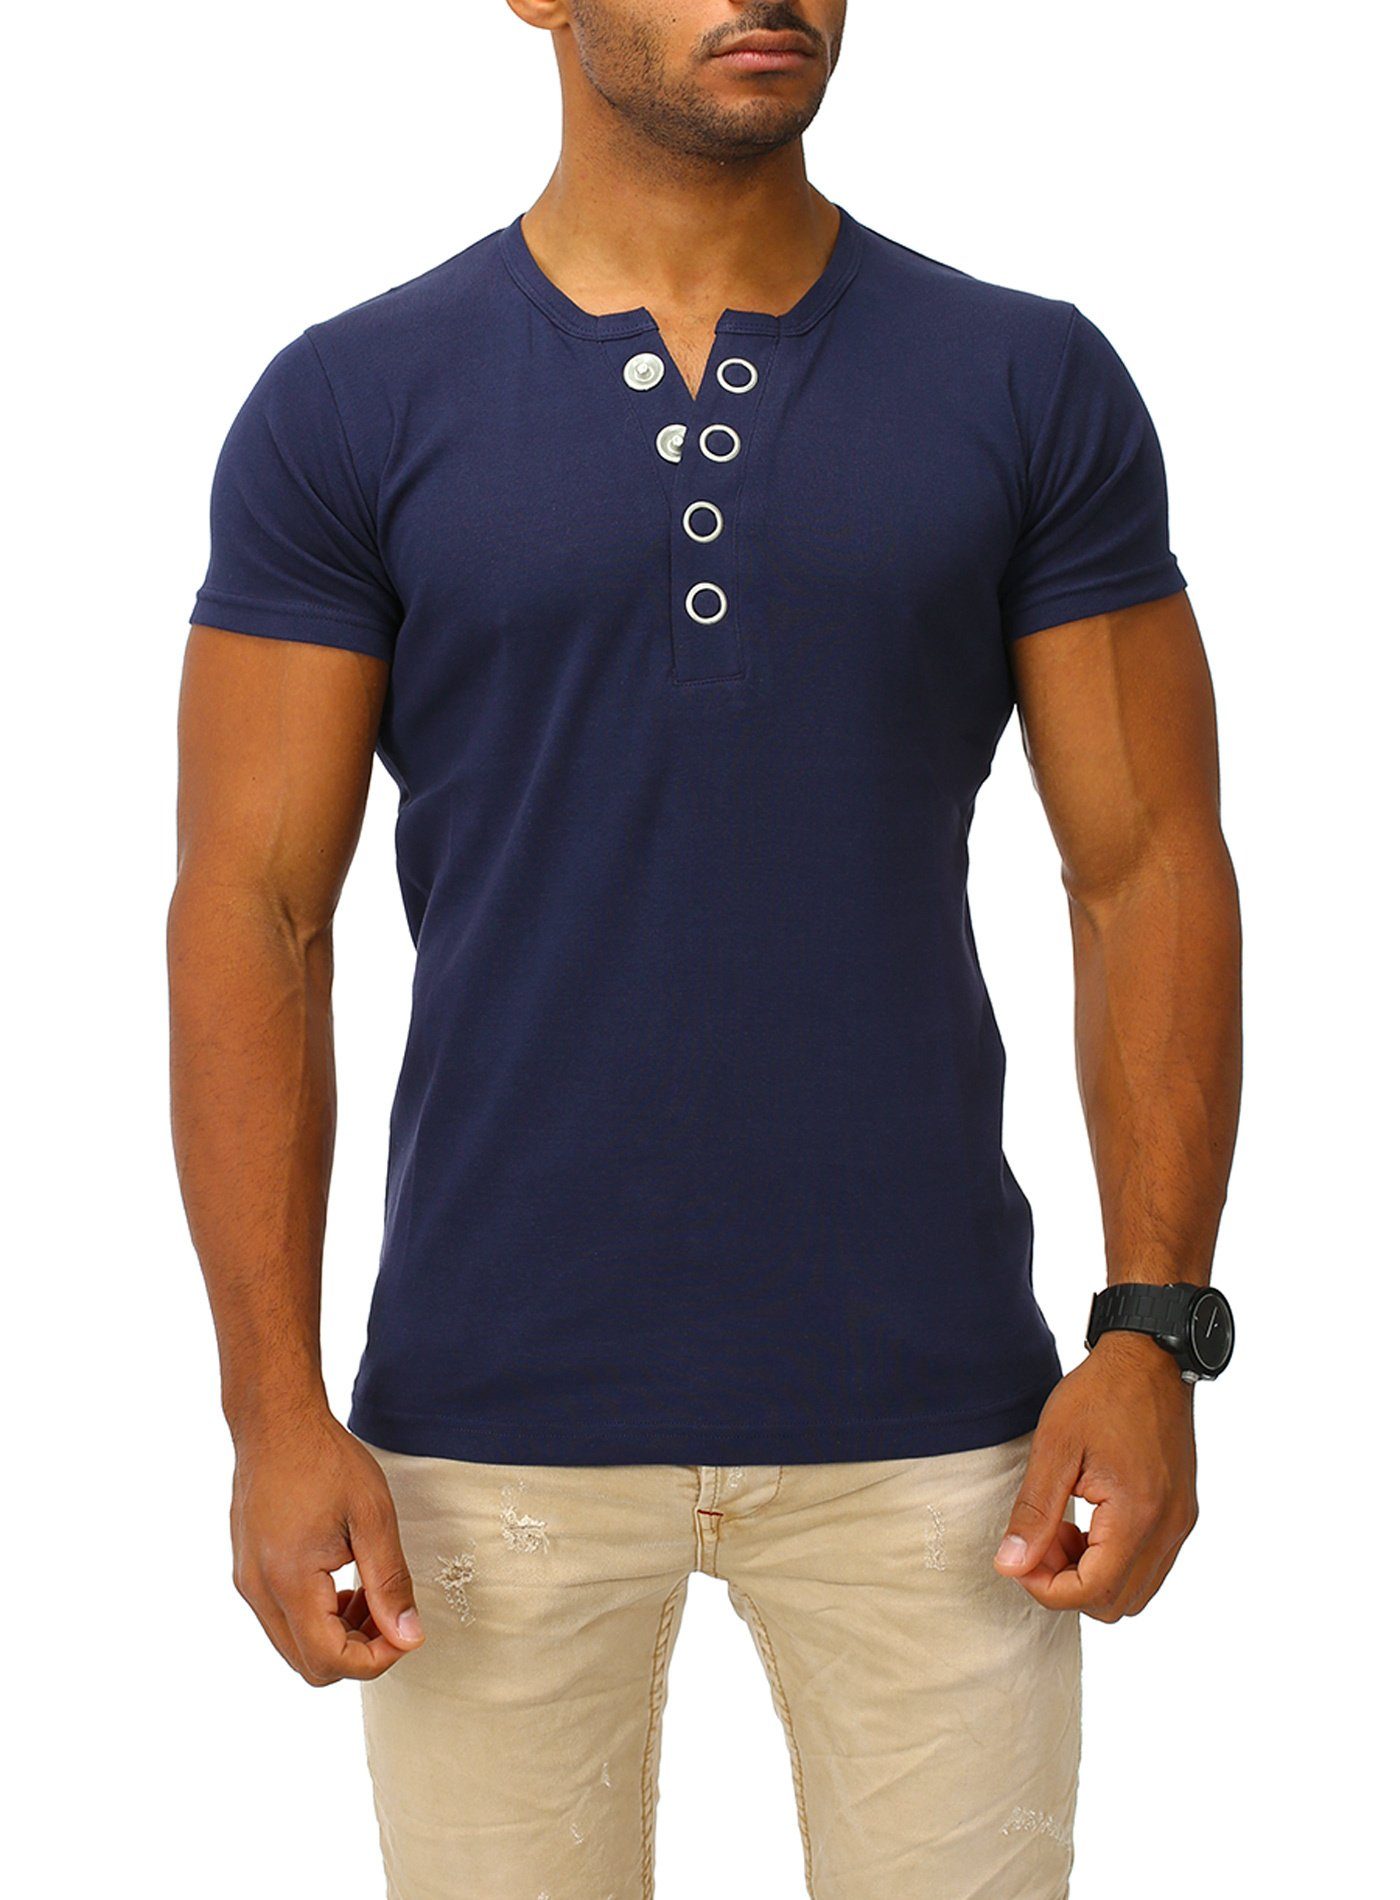 Joe Franks T-Shirt Big Button in stylischem Slim Fit navy